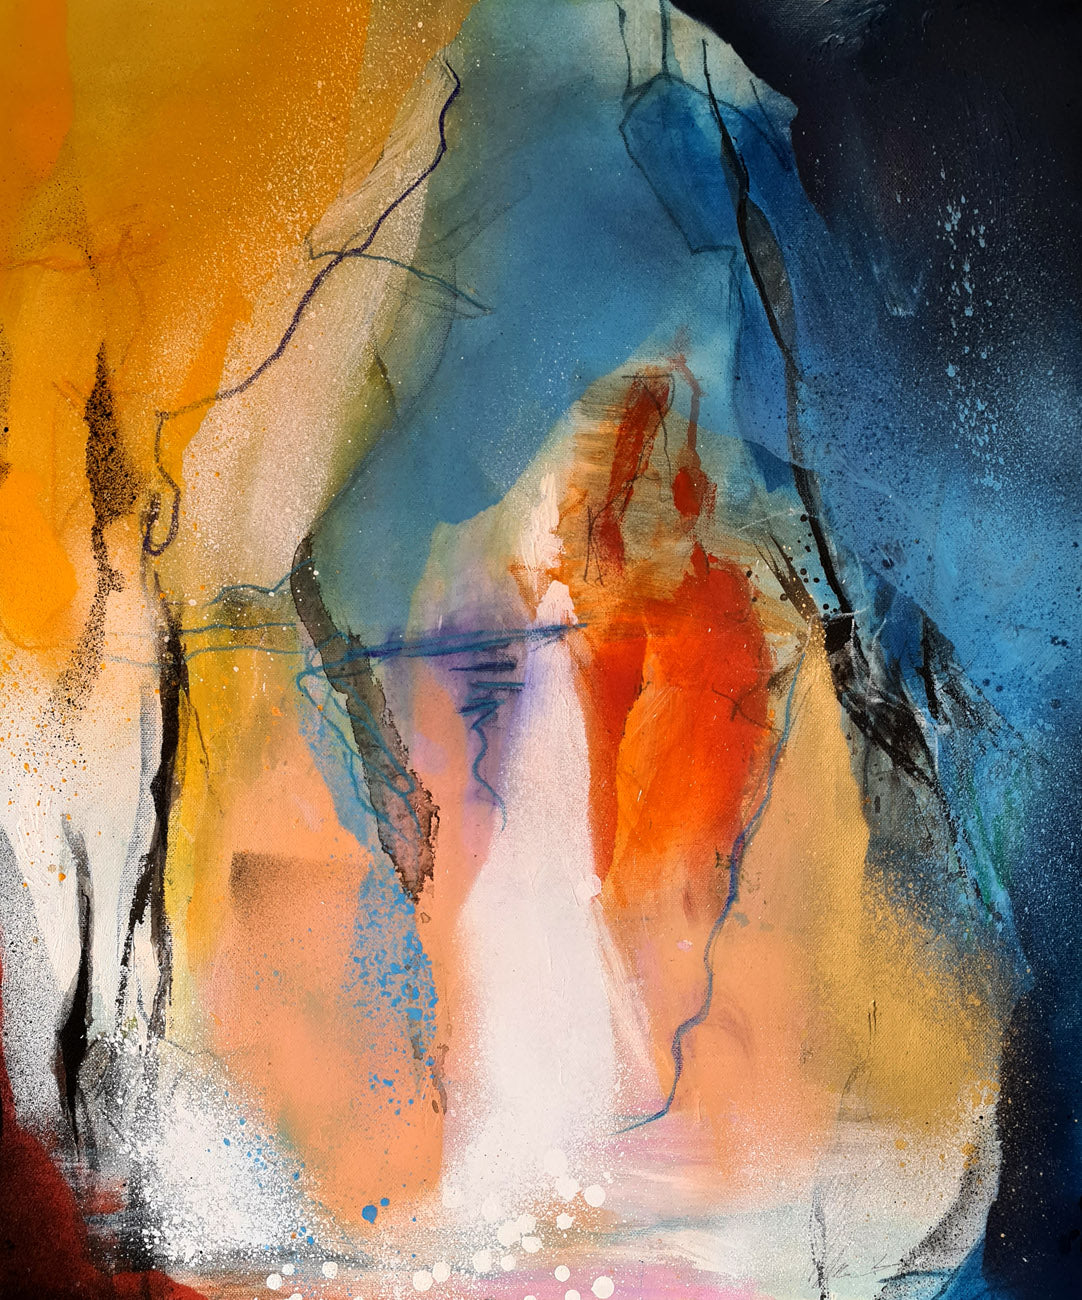 L'autre rive - peinture abstraite sur toile 55x65cm, bleu, jaune, orange